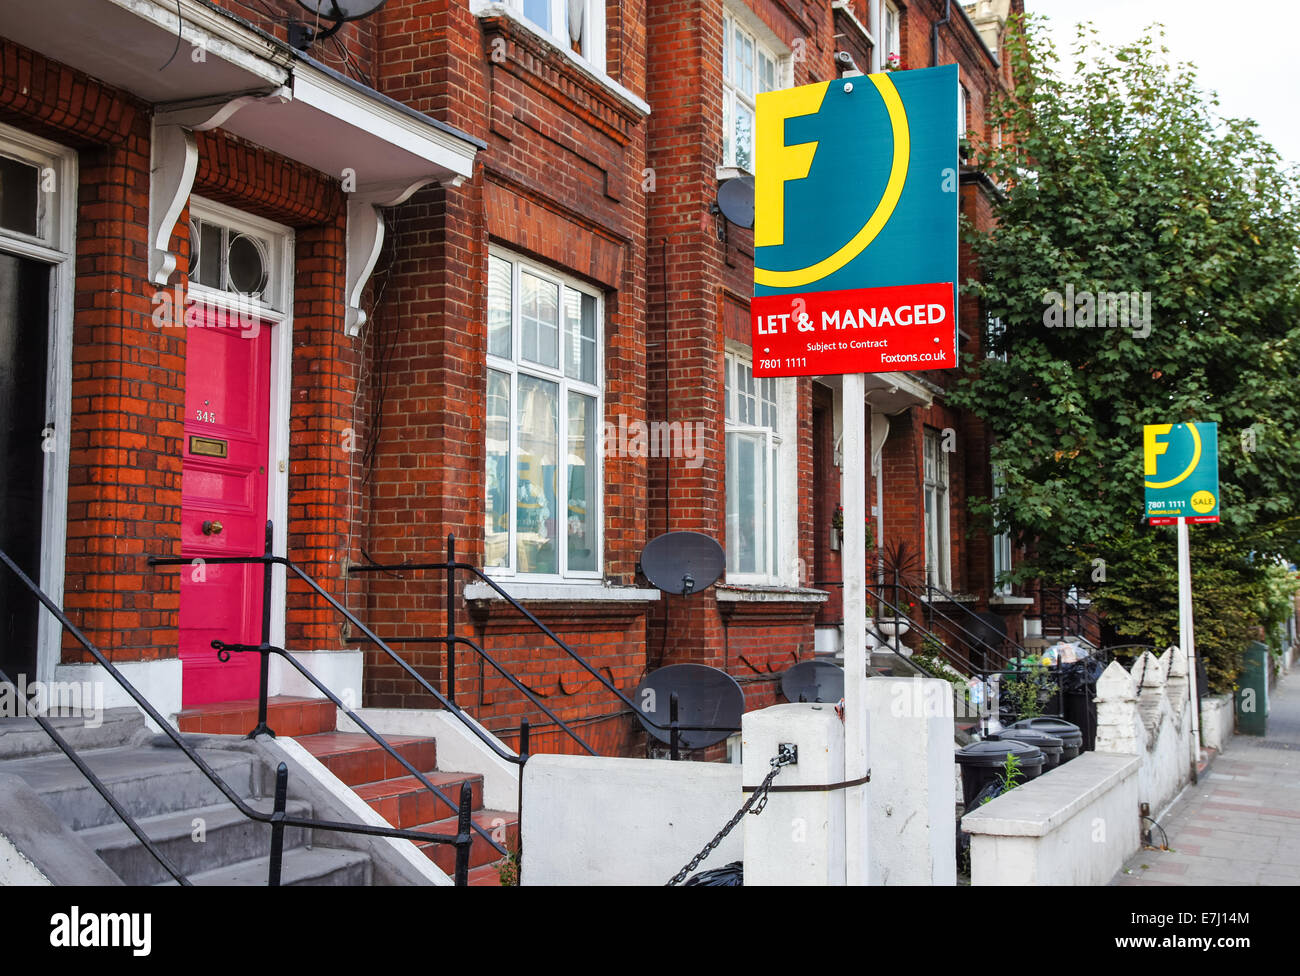 Foxtons immobilier signes de laisser dehors maisons mitoyennes dedans Londres du Sud Angleterre Royaume-Uni Royaume-Uni Banque D'Images